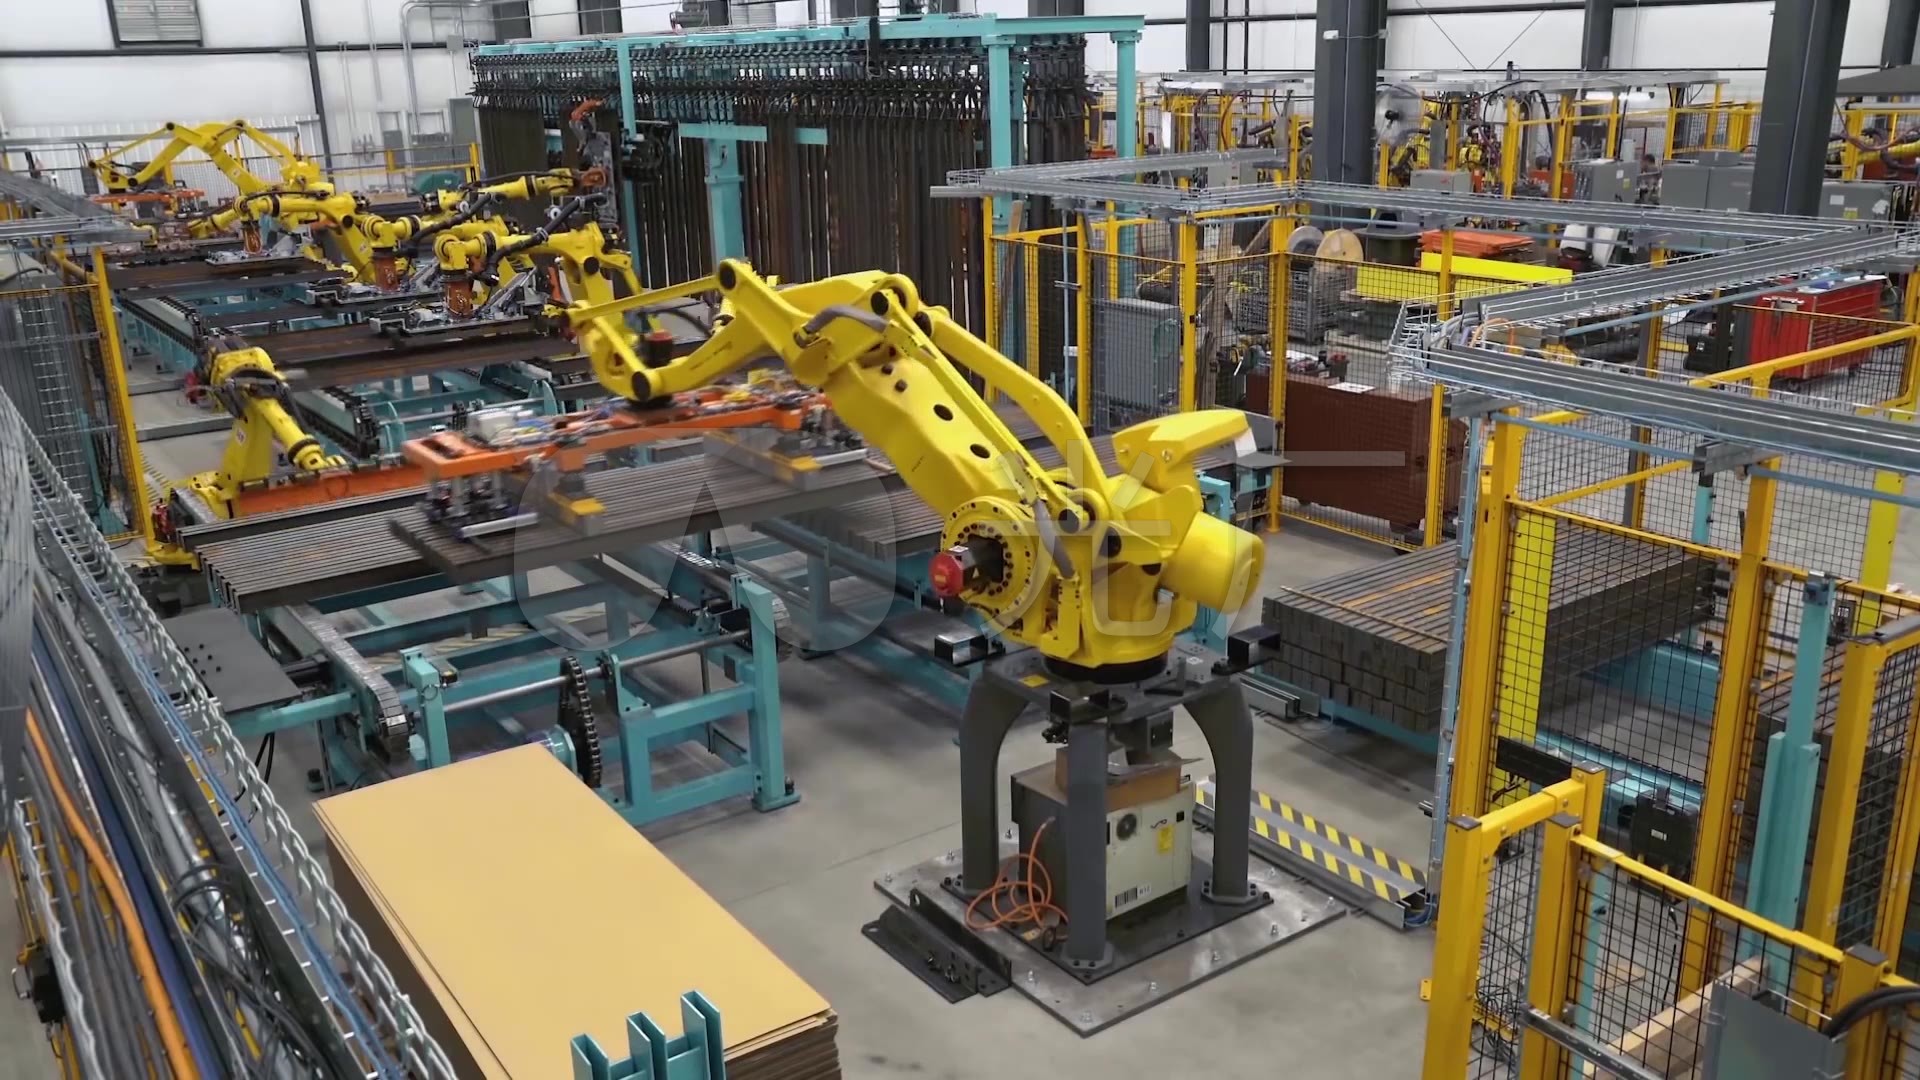 亚博集团:639中国工业机器人产业创新发展进入快车道